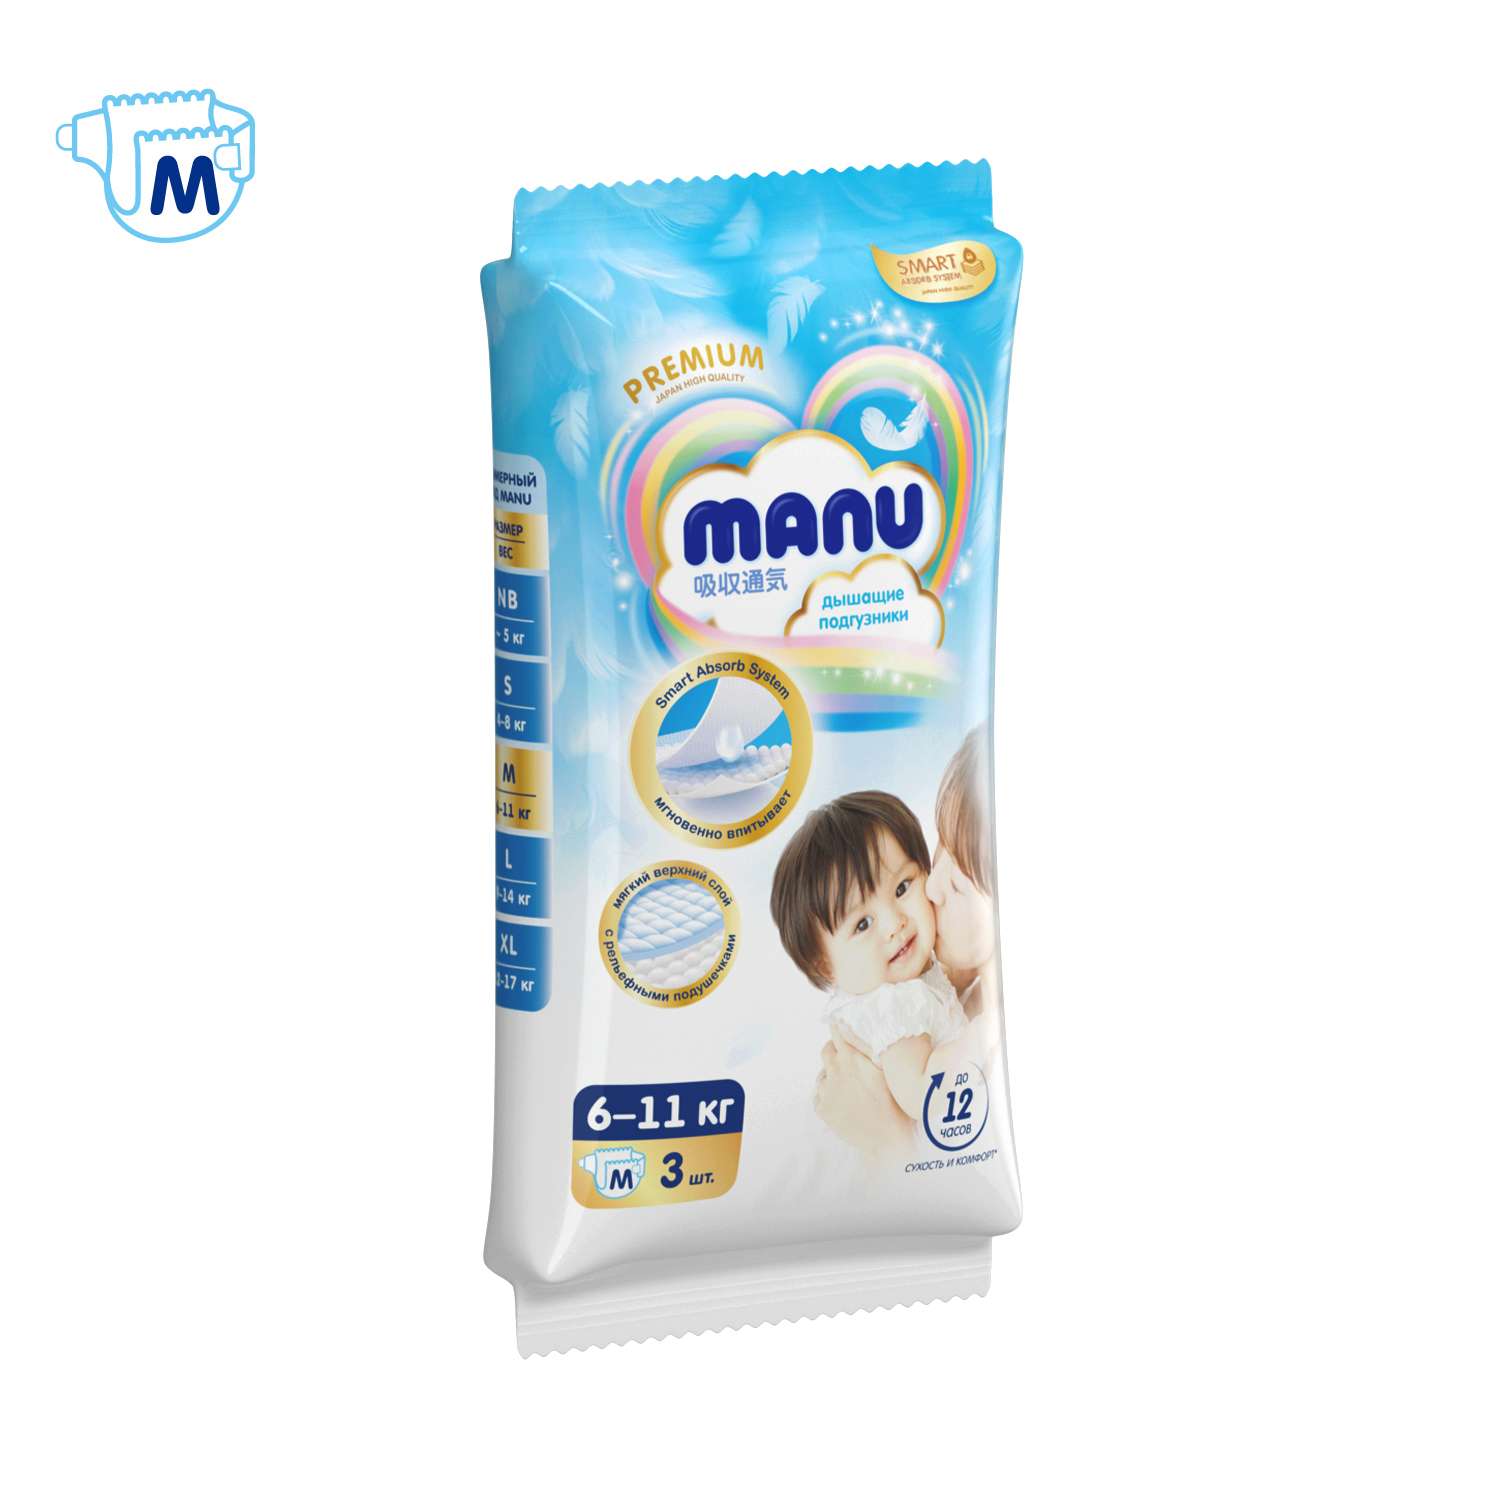 Подгузники Manu Premium M 6-11кг 3шт - фото 10